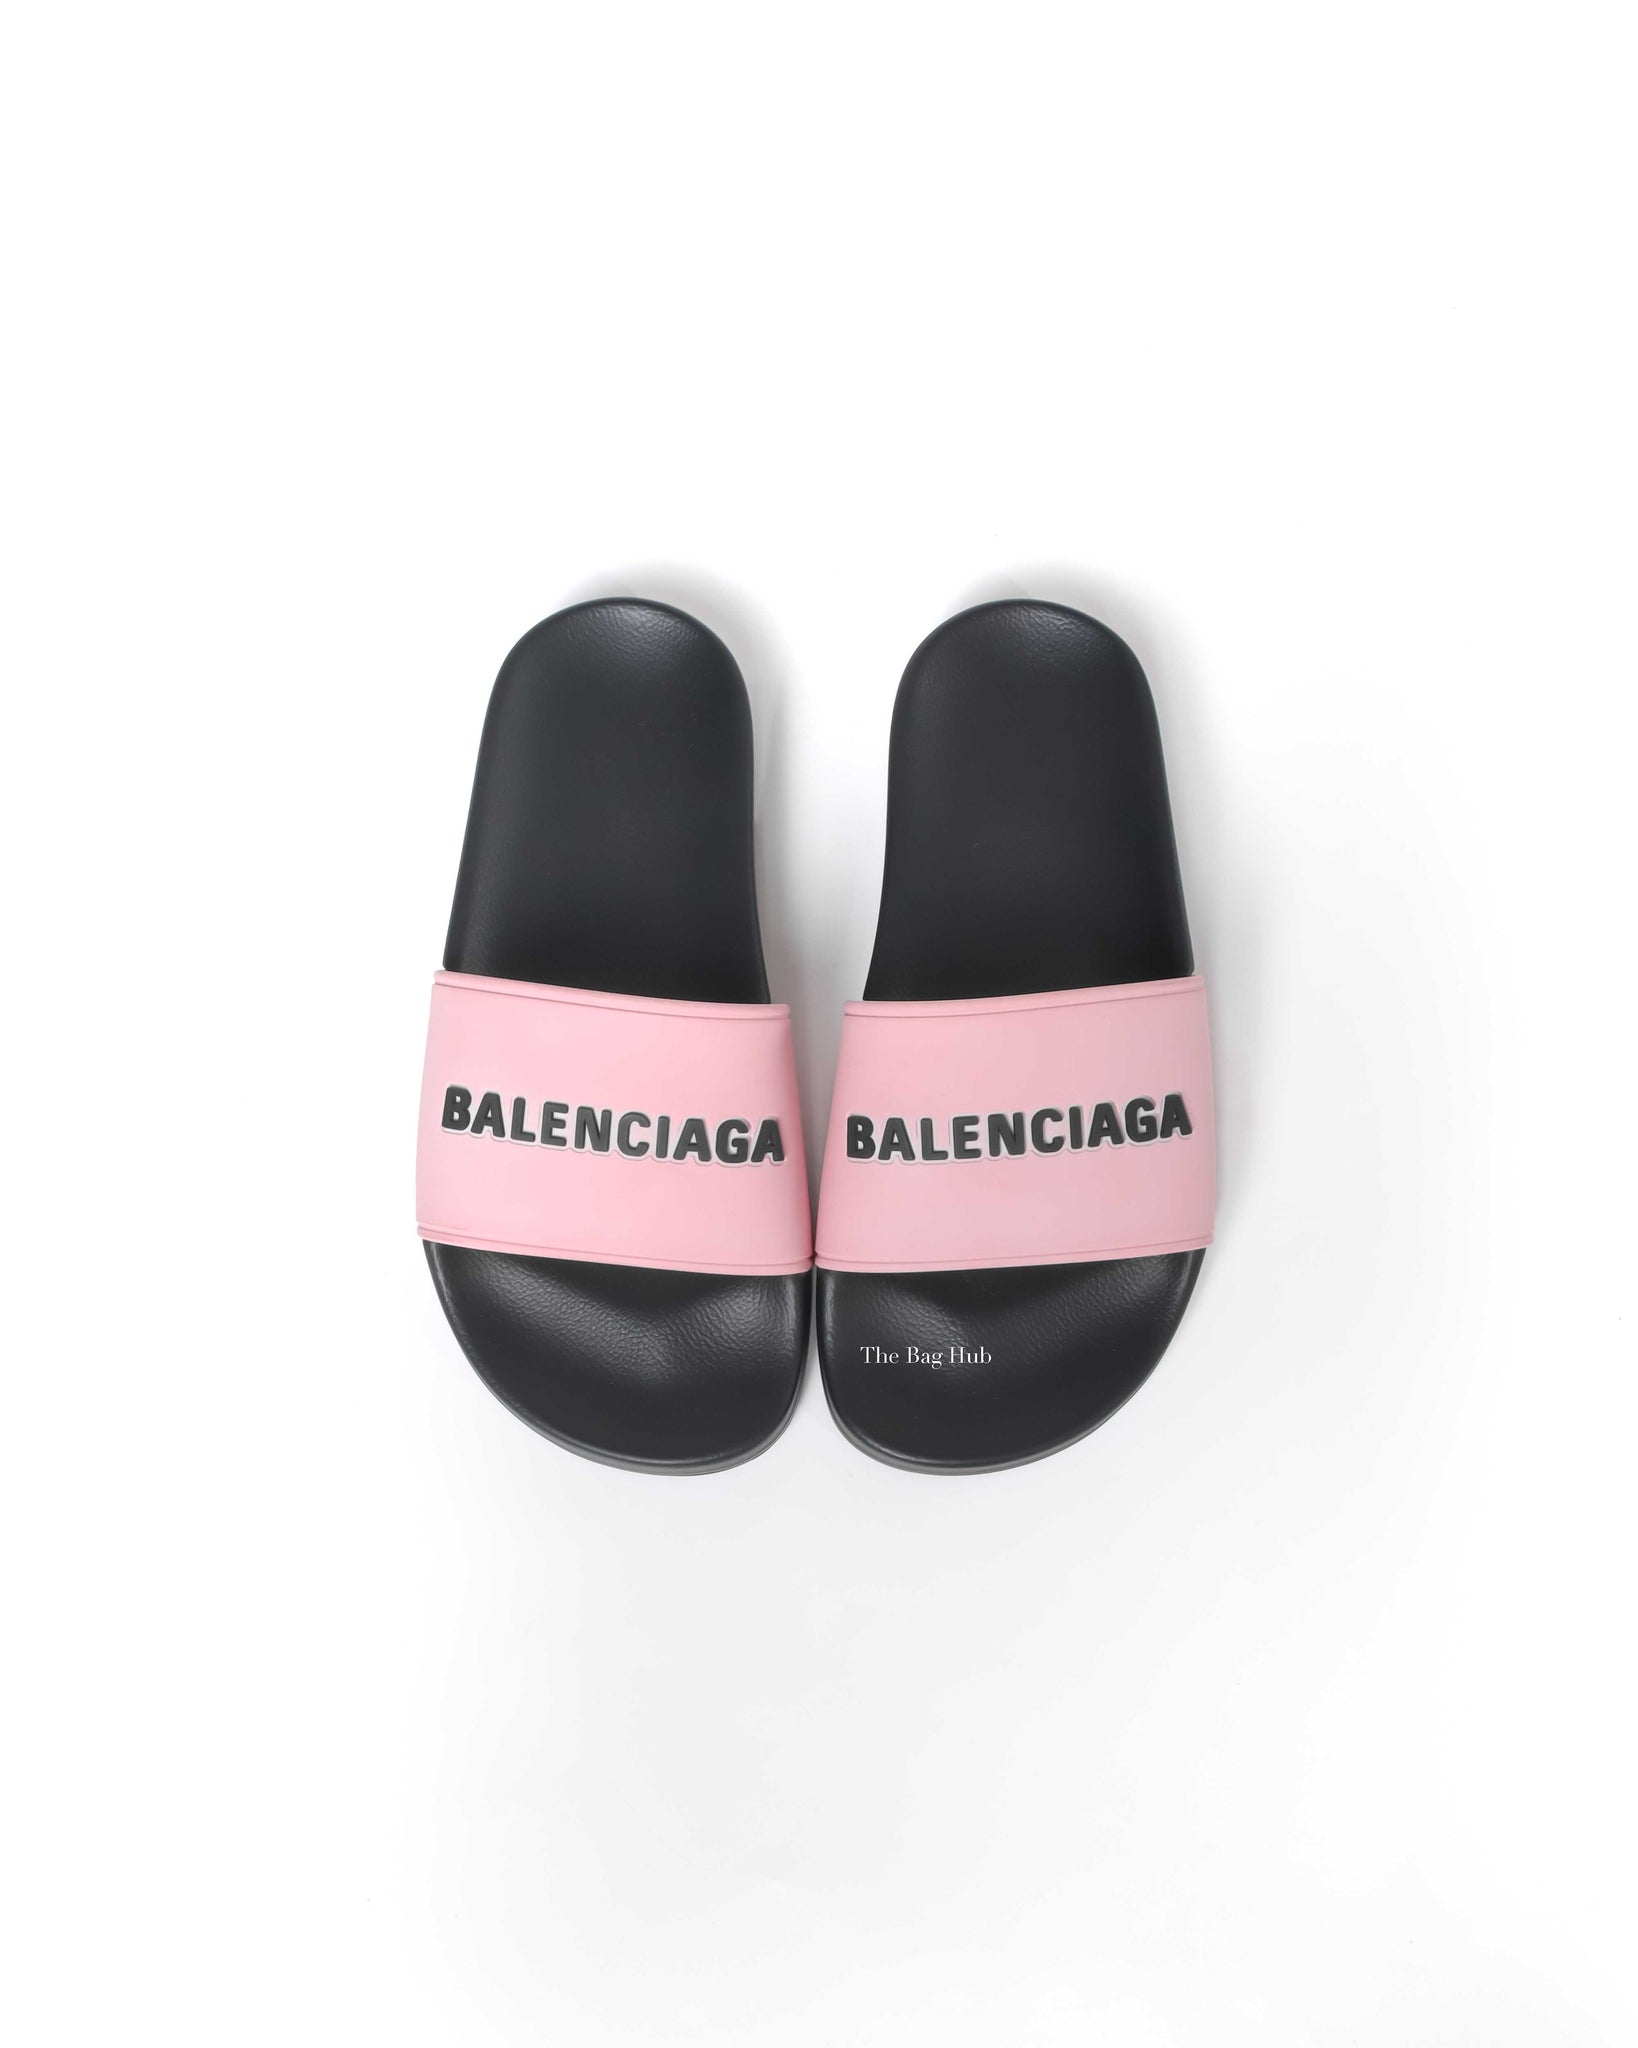 Balenciaga Black/Pink Rubber Women's Pool Slides Size 35-8